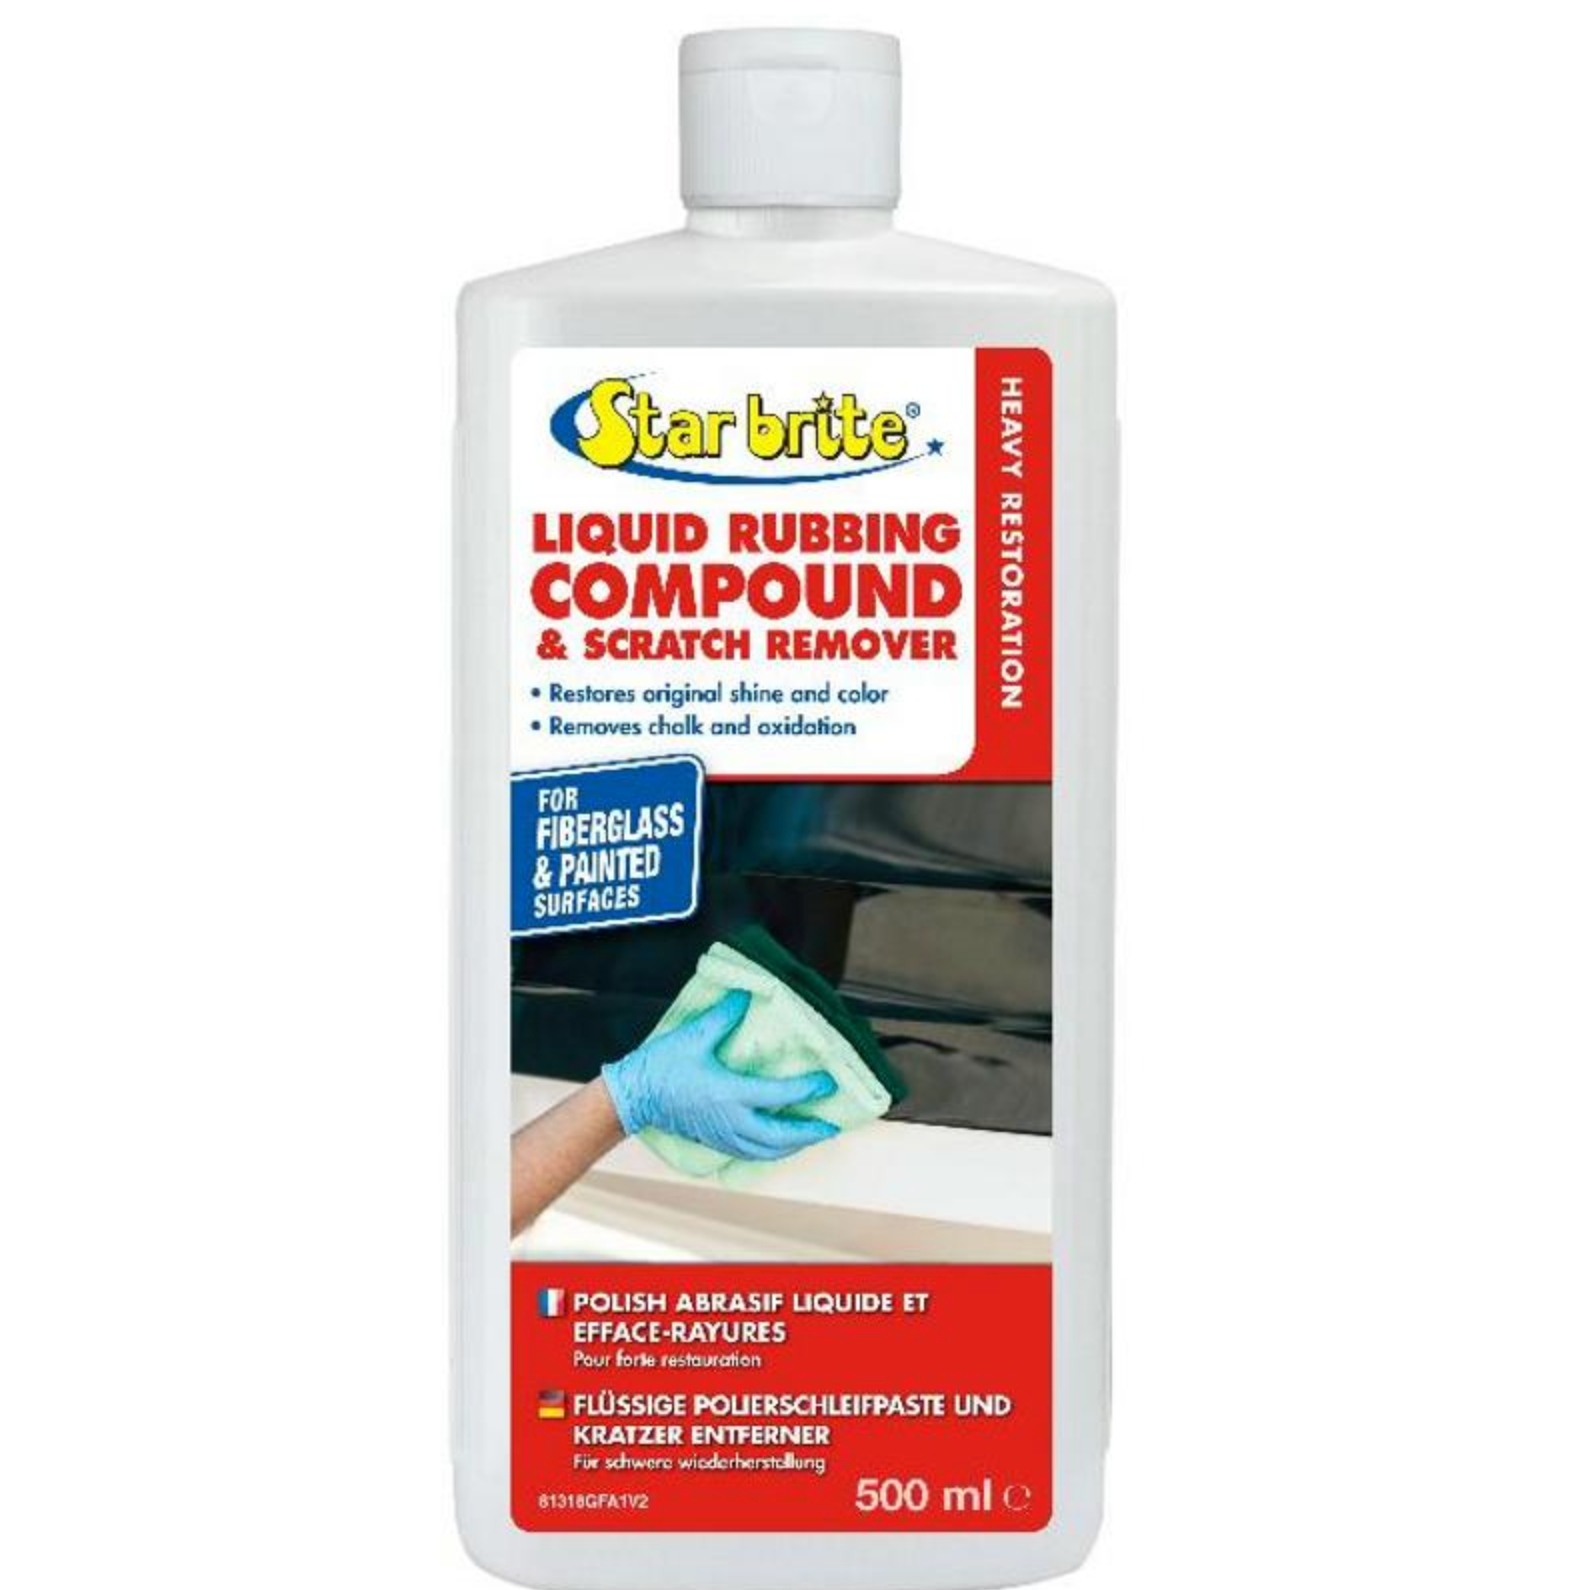 Liquid Rubbing Compound & Scratch Remover